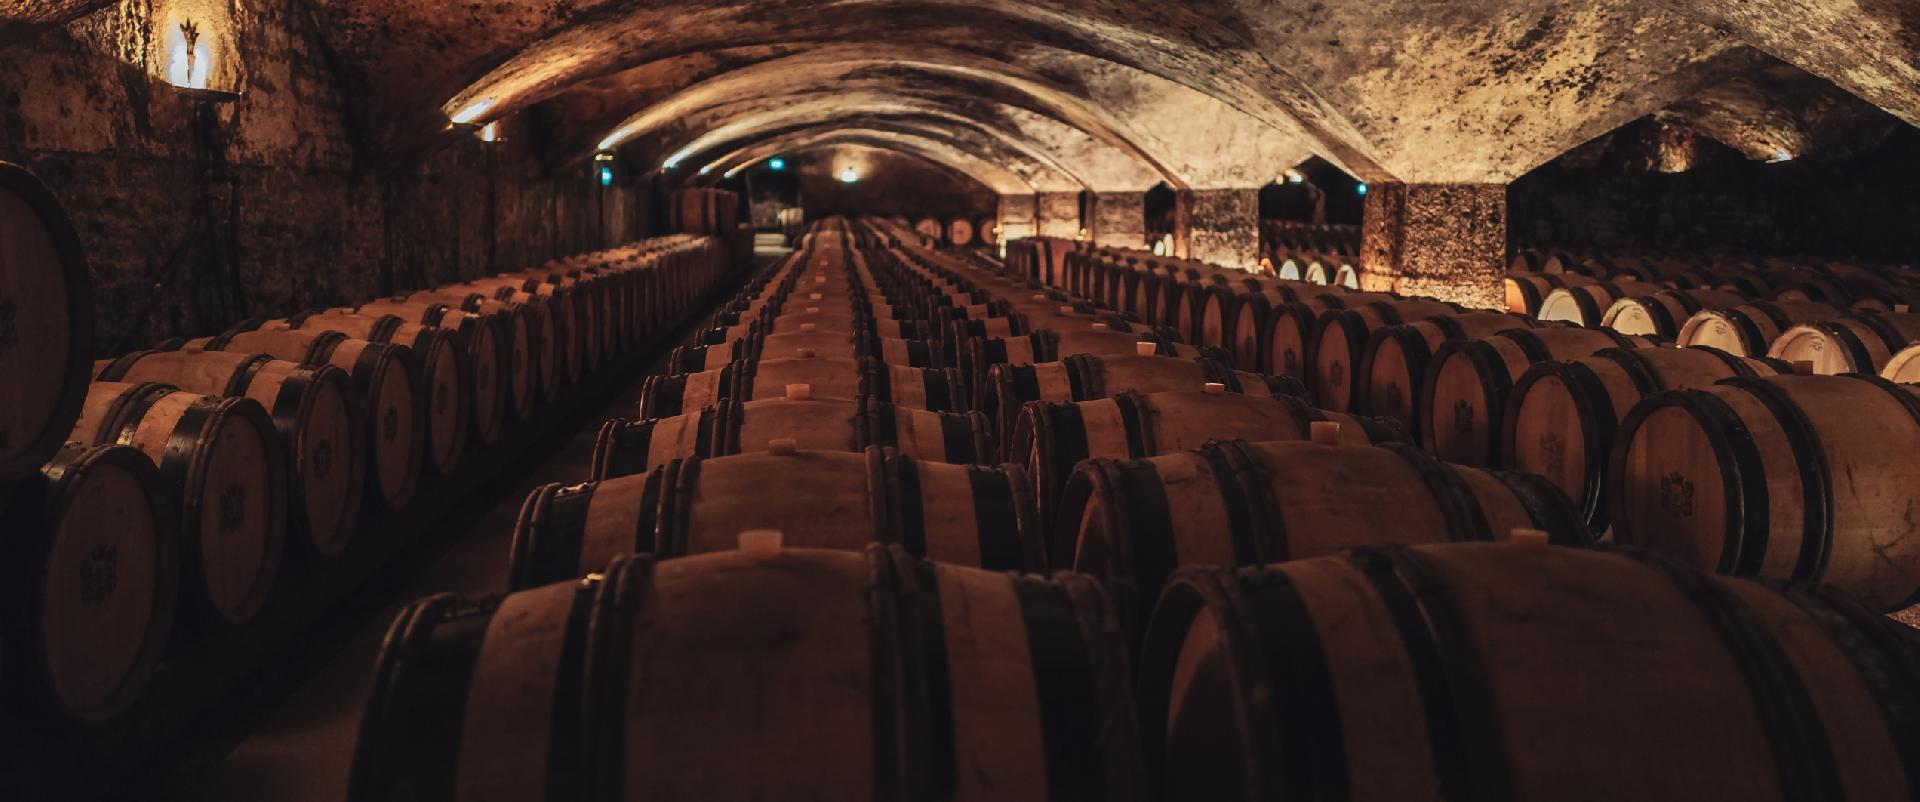 Para os apreciadores de vinho, saber como escolher um cruzeiro Douro que inclua visitas Ã© essencial